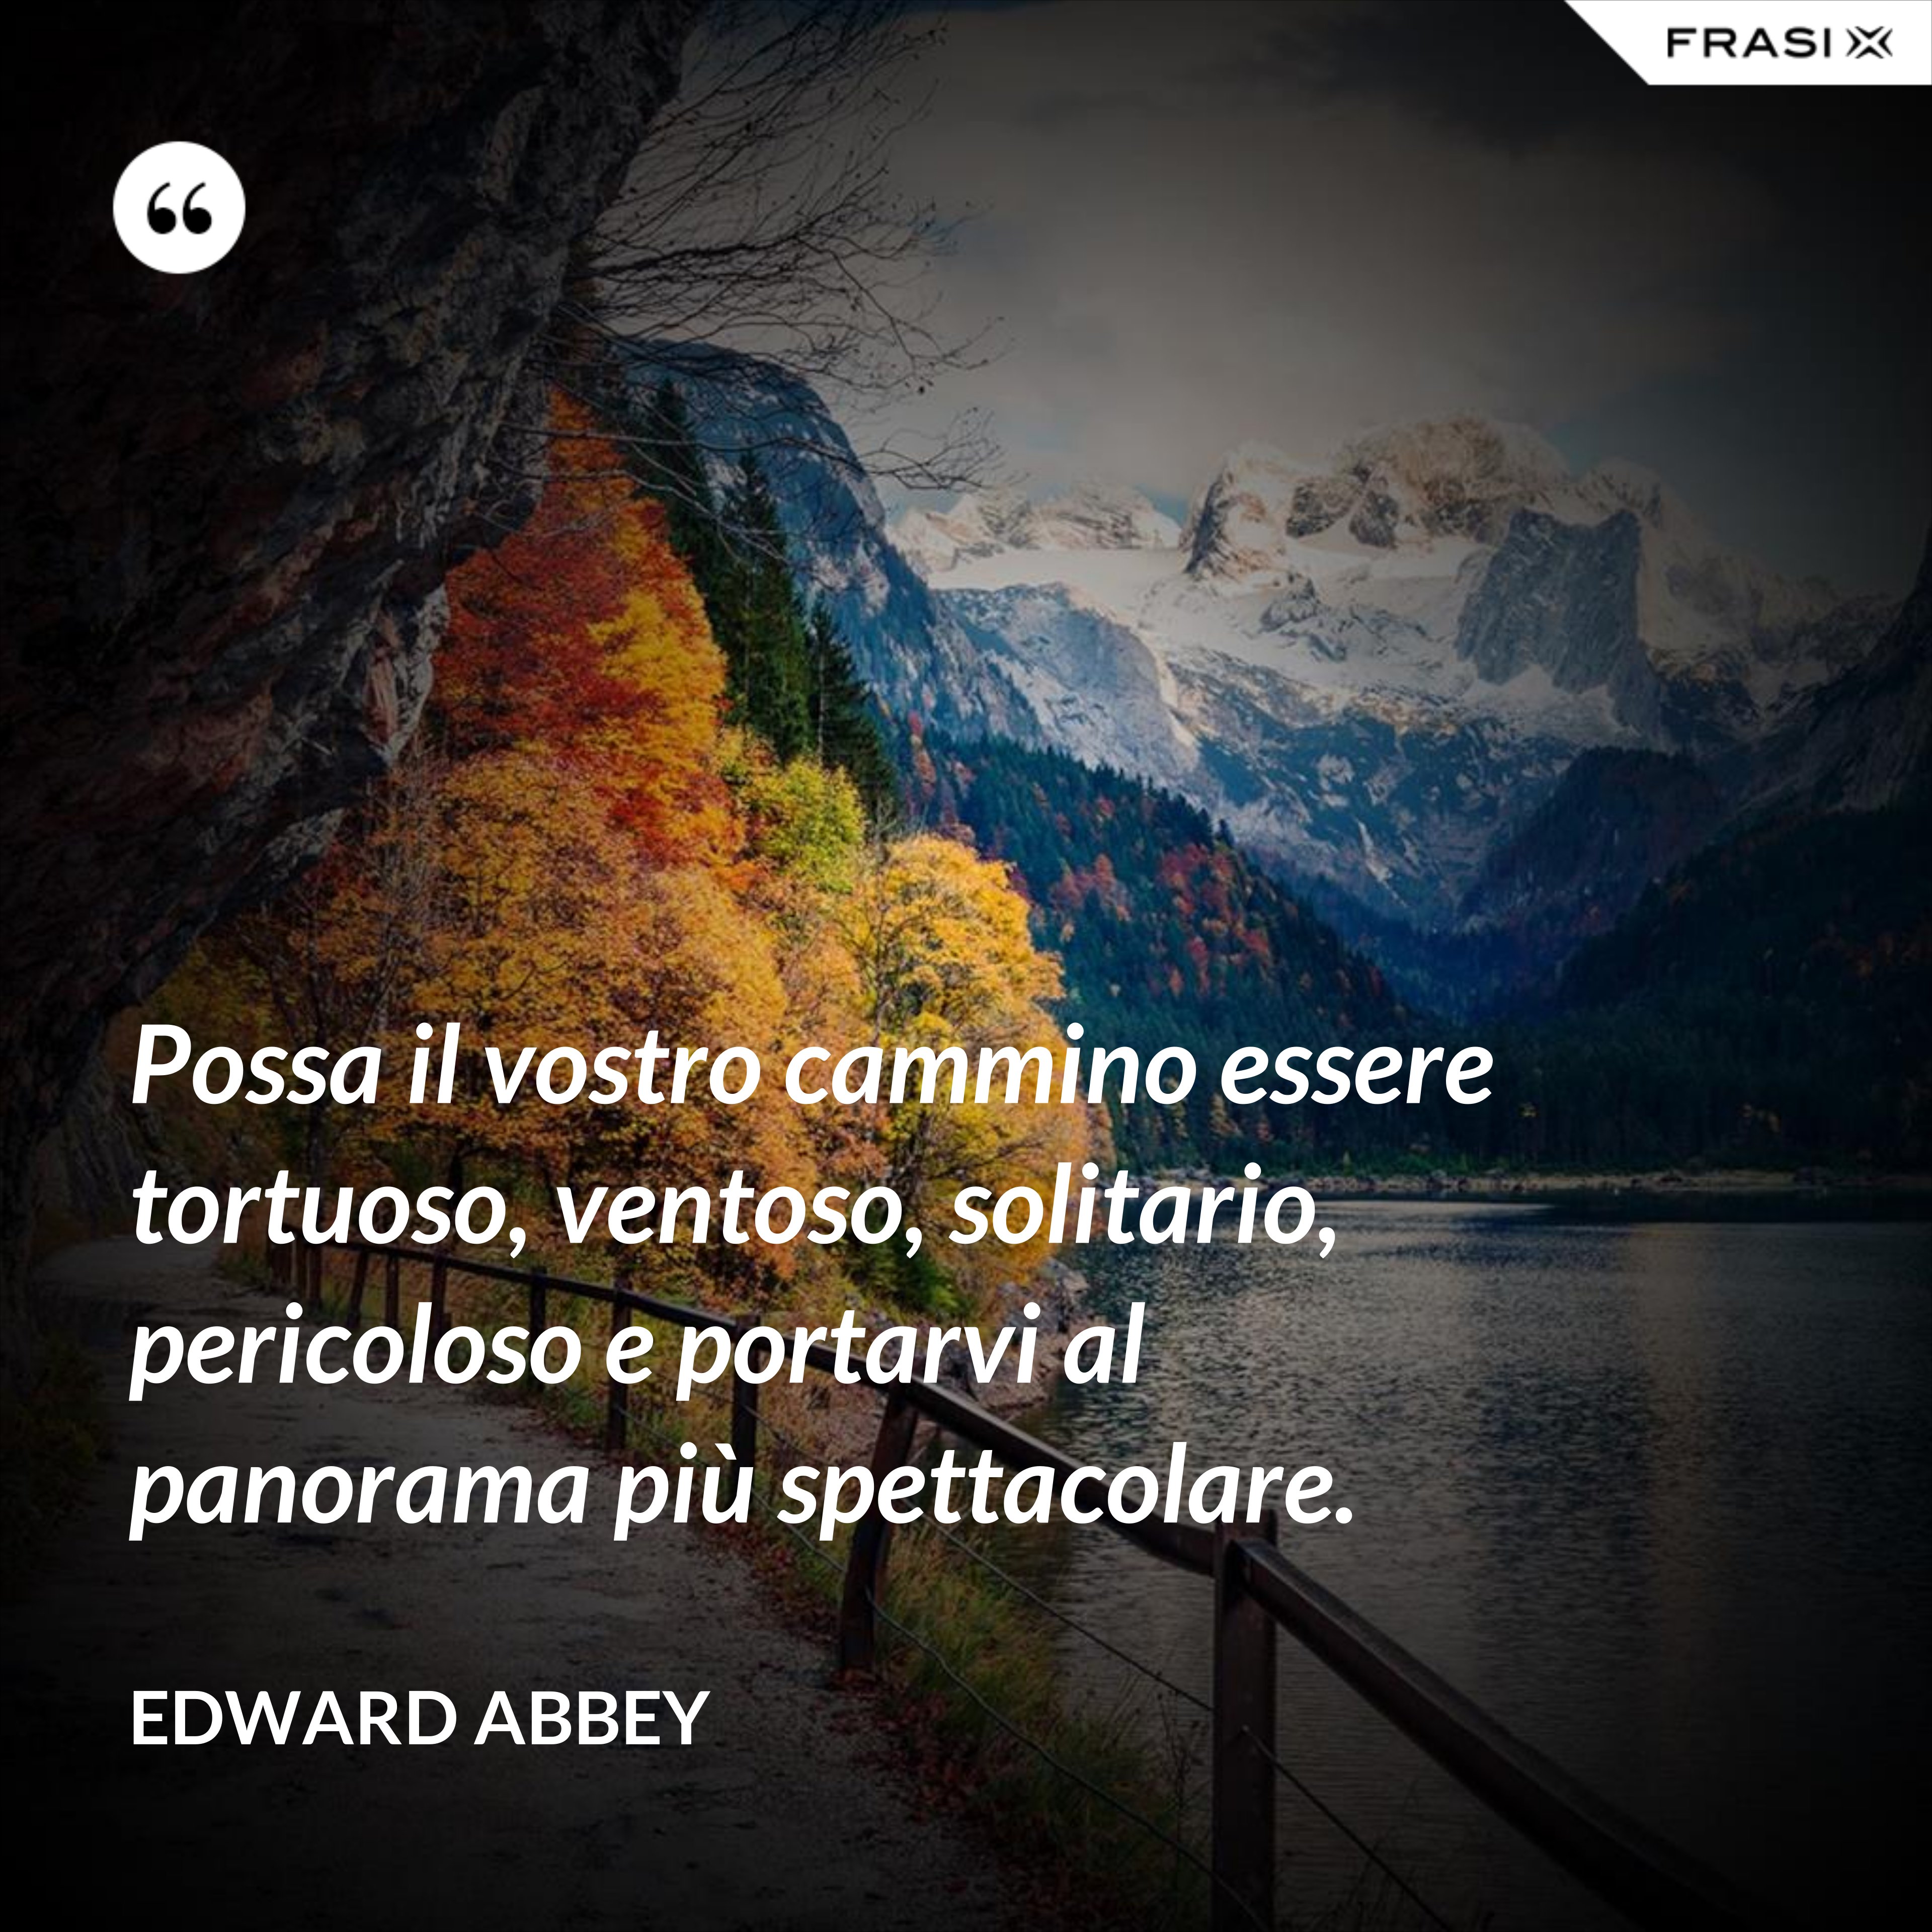 Possa il vostro cammino essere tortuoso, ventoso, solitario, pericoloso e portarvi al panorama più spettacolare. - Edward Abbey